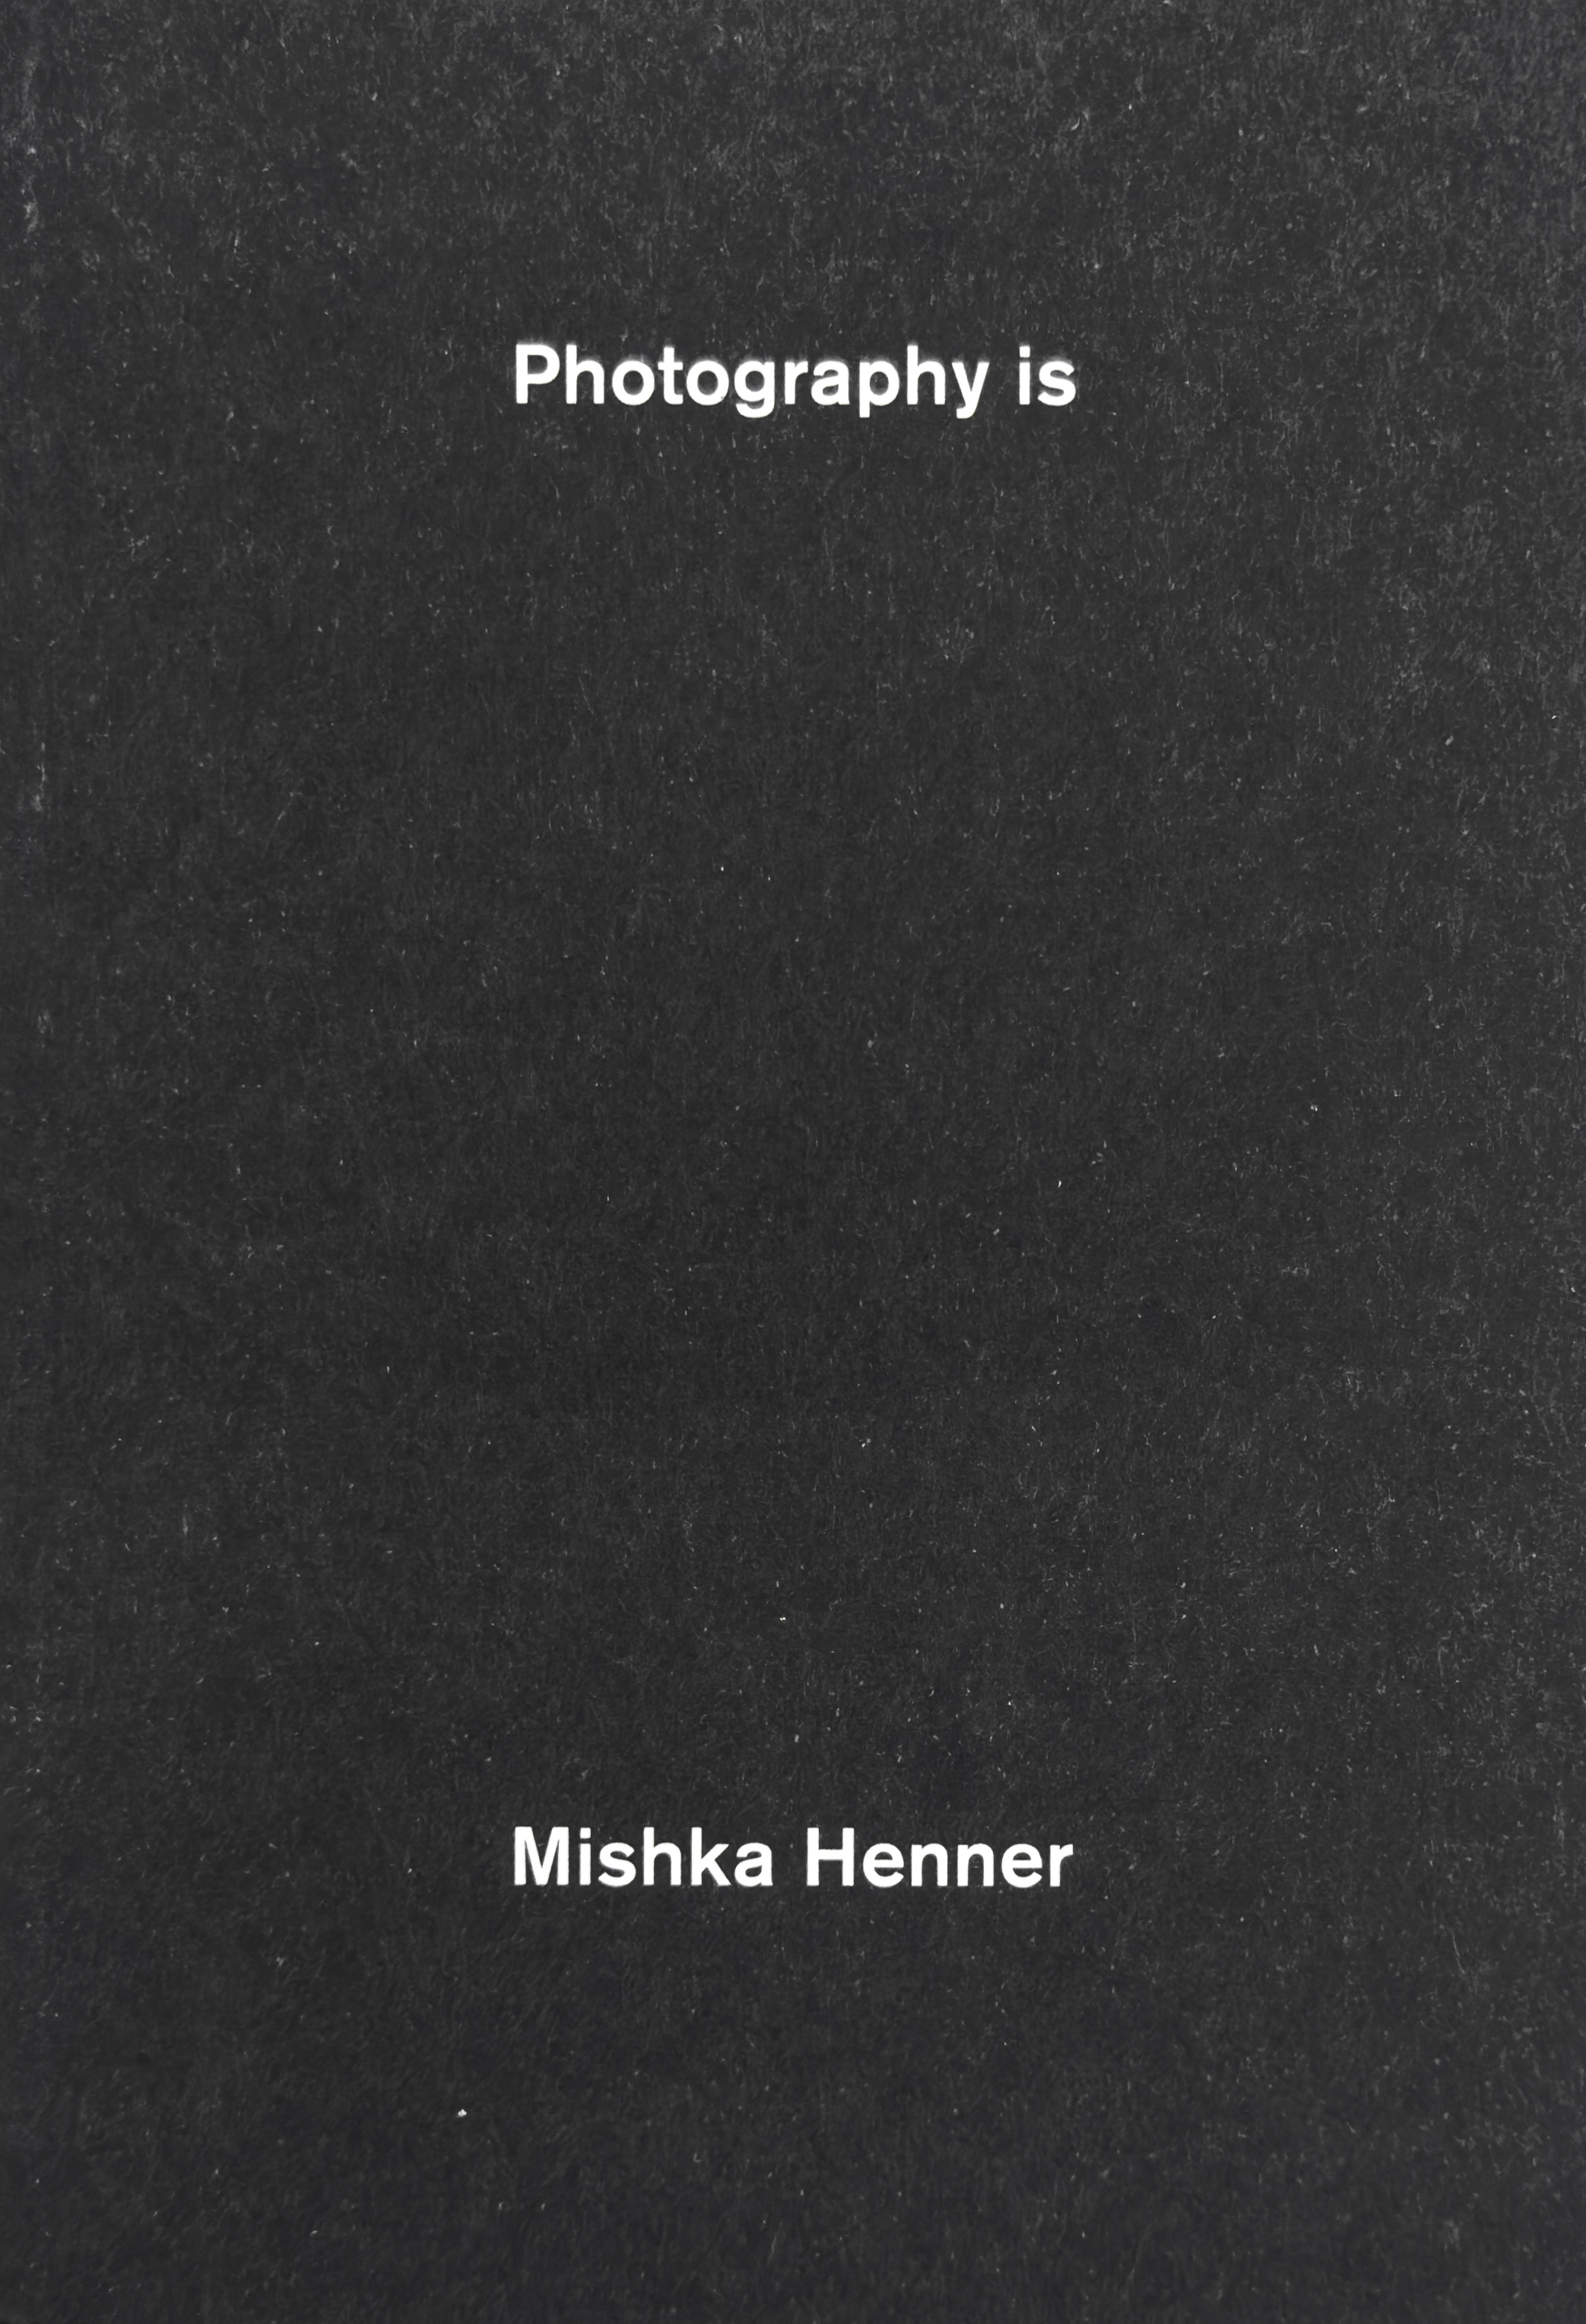 Mishka Henner